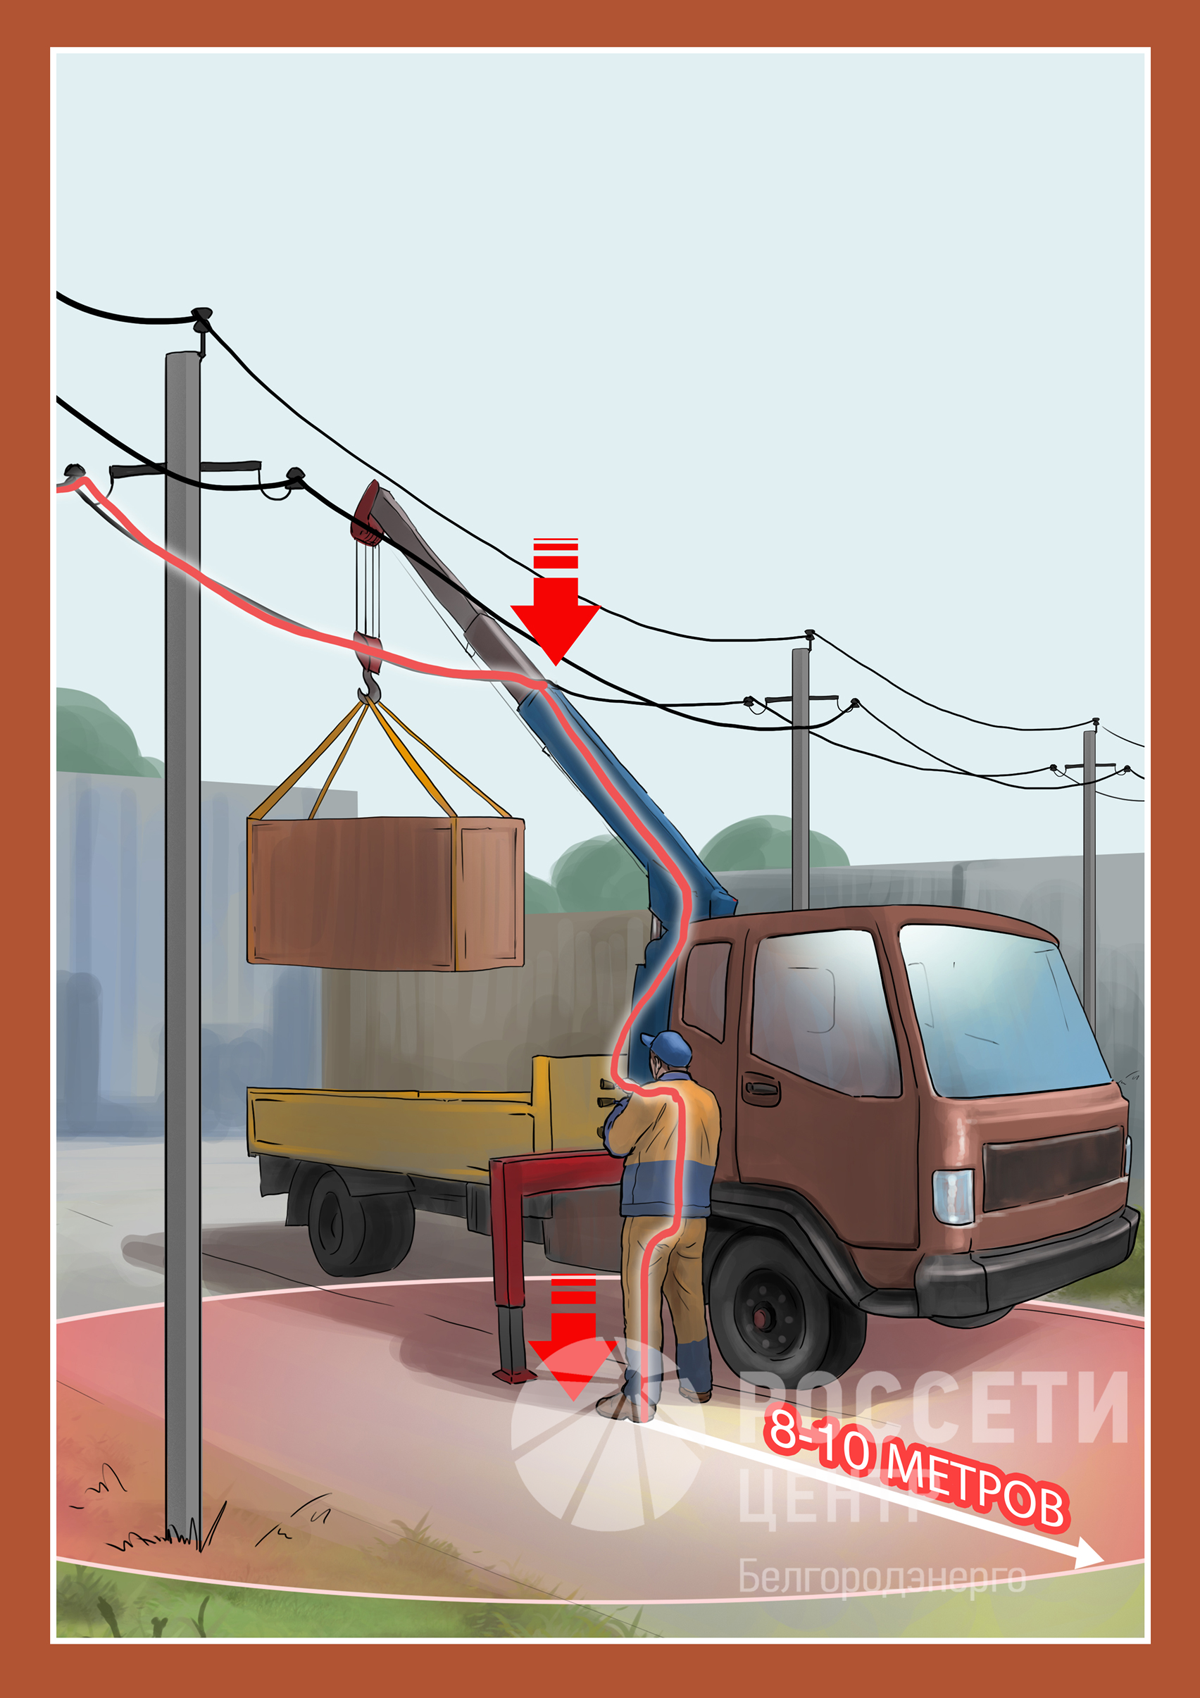 Белгородэнерго предупреждает о смертельной опасности несанкционированных работ вблизи объектов электроэнергетики!.